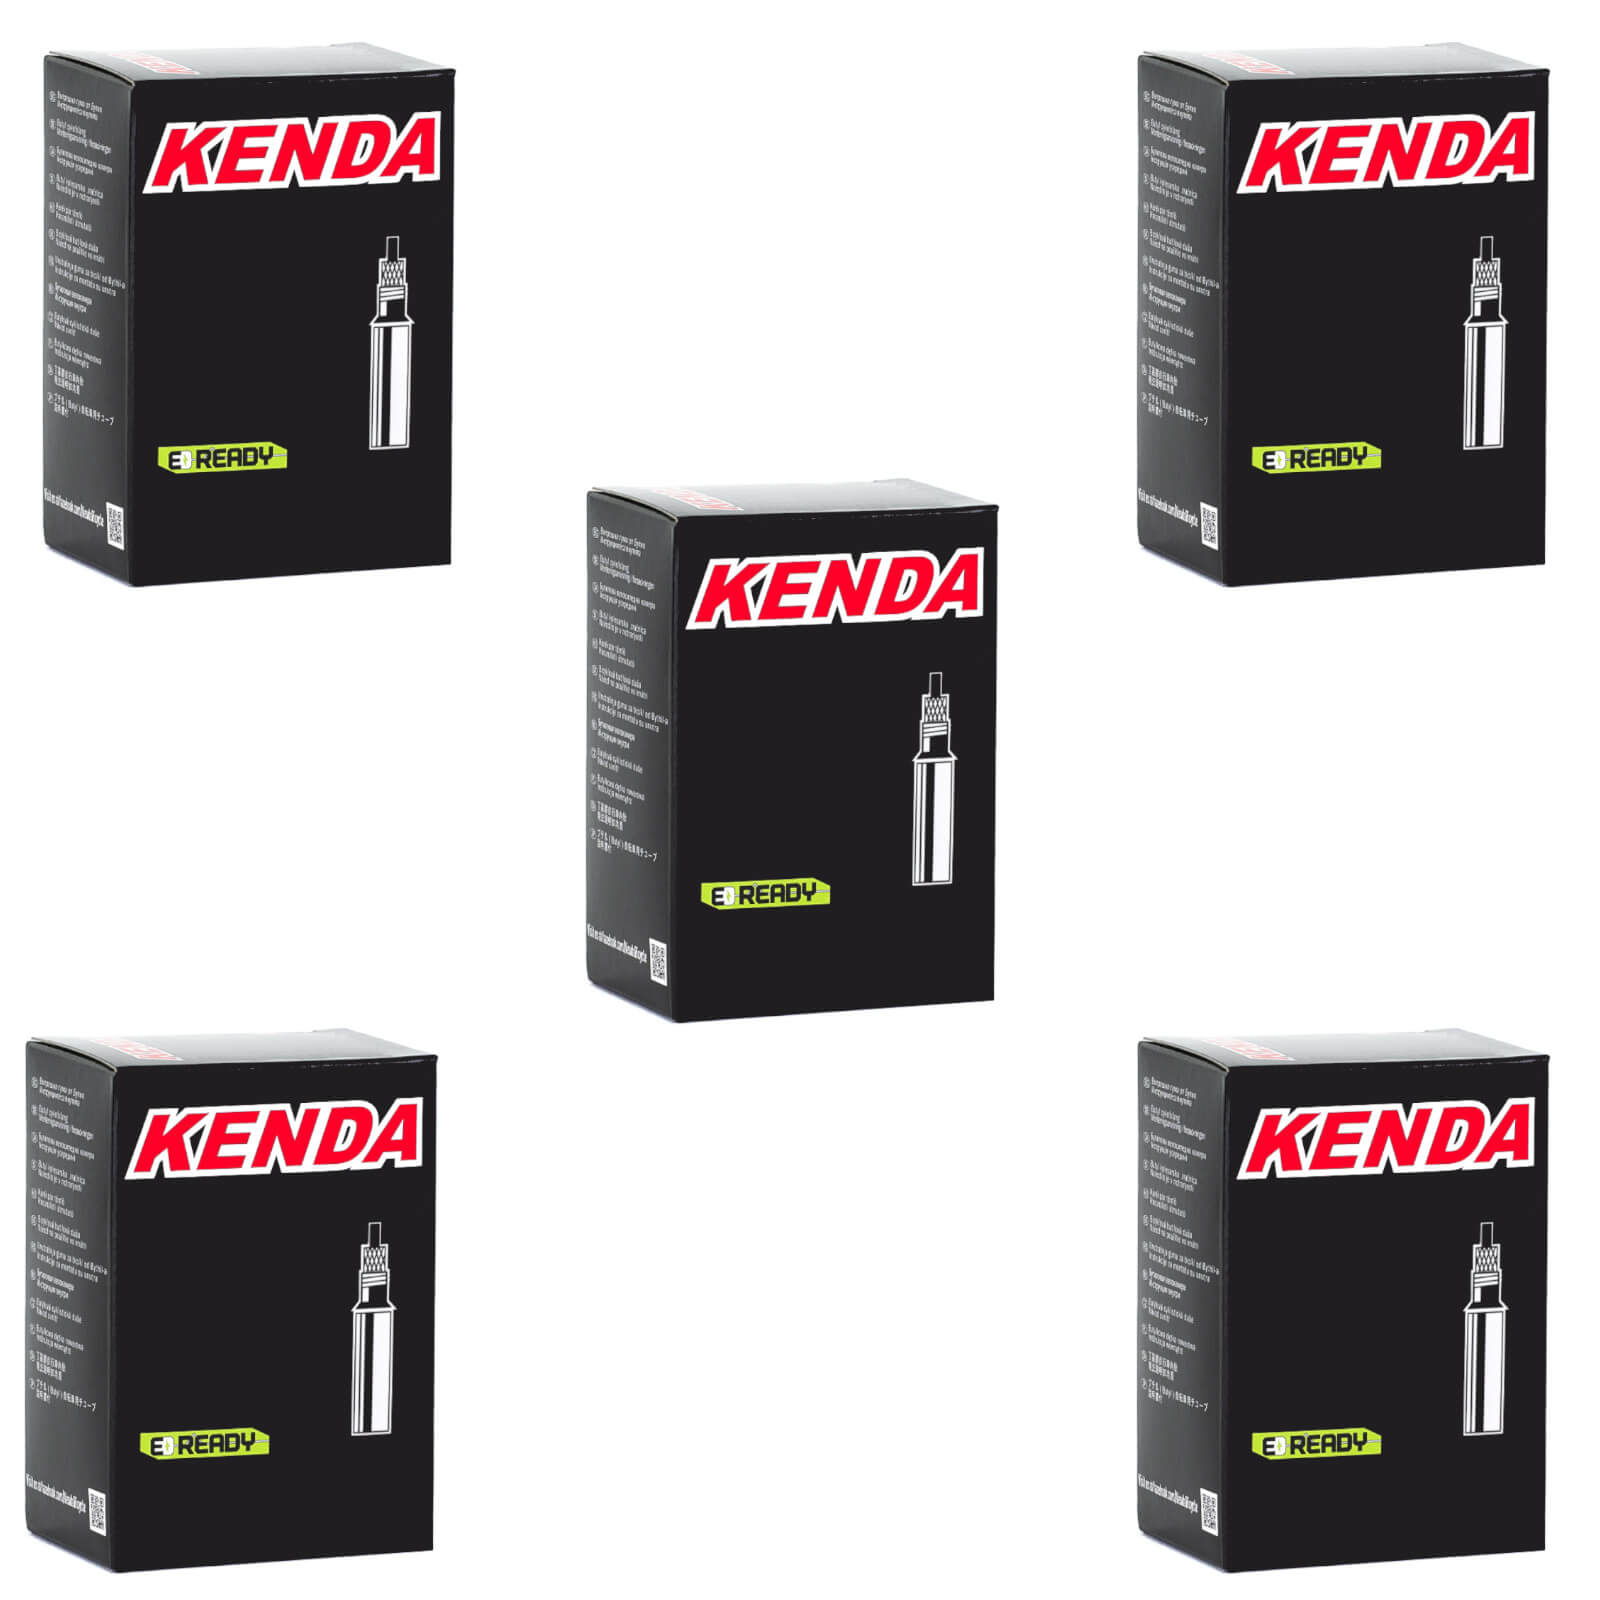 Kenda 700x45-50c 700c Presta Valve Bike Inner Tube Pack of 5